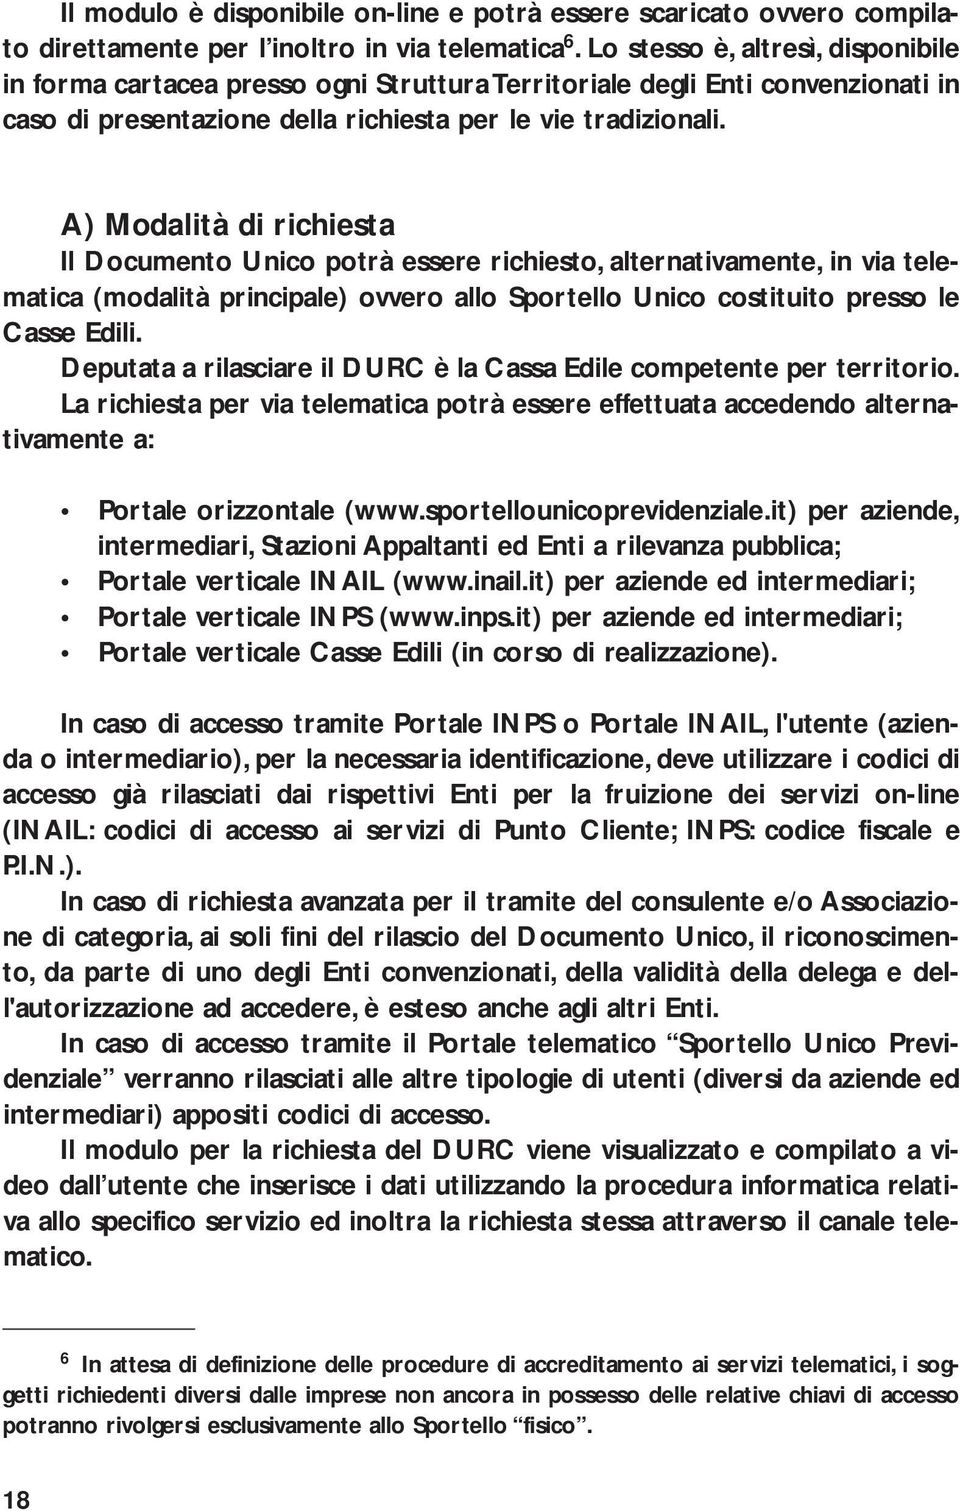 A) Modalità di richiesta Il Documento Unico potrà essere richiesto, alternativamente, in via telematica (modalità principale) ovvero allo Sportello Unico costituito presso le Casse Edili.